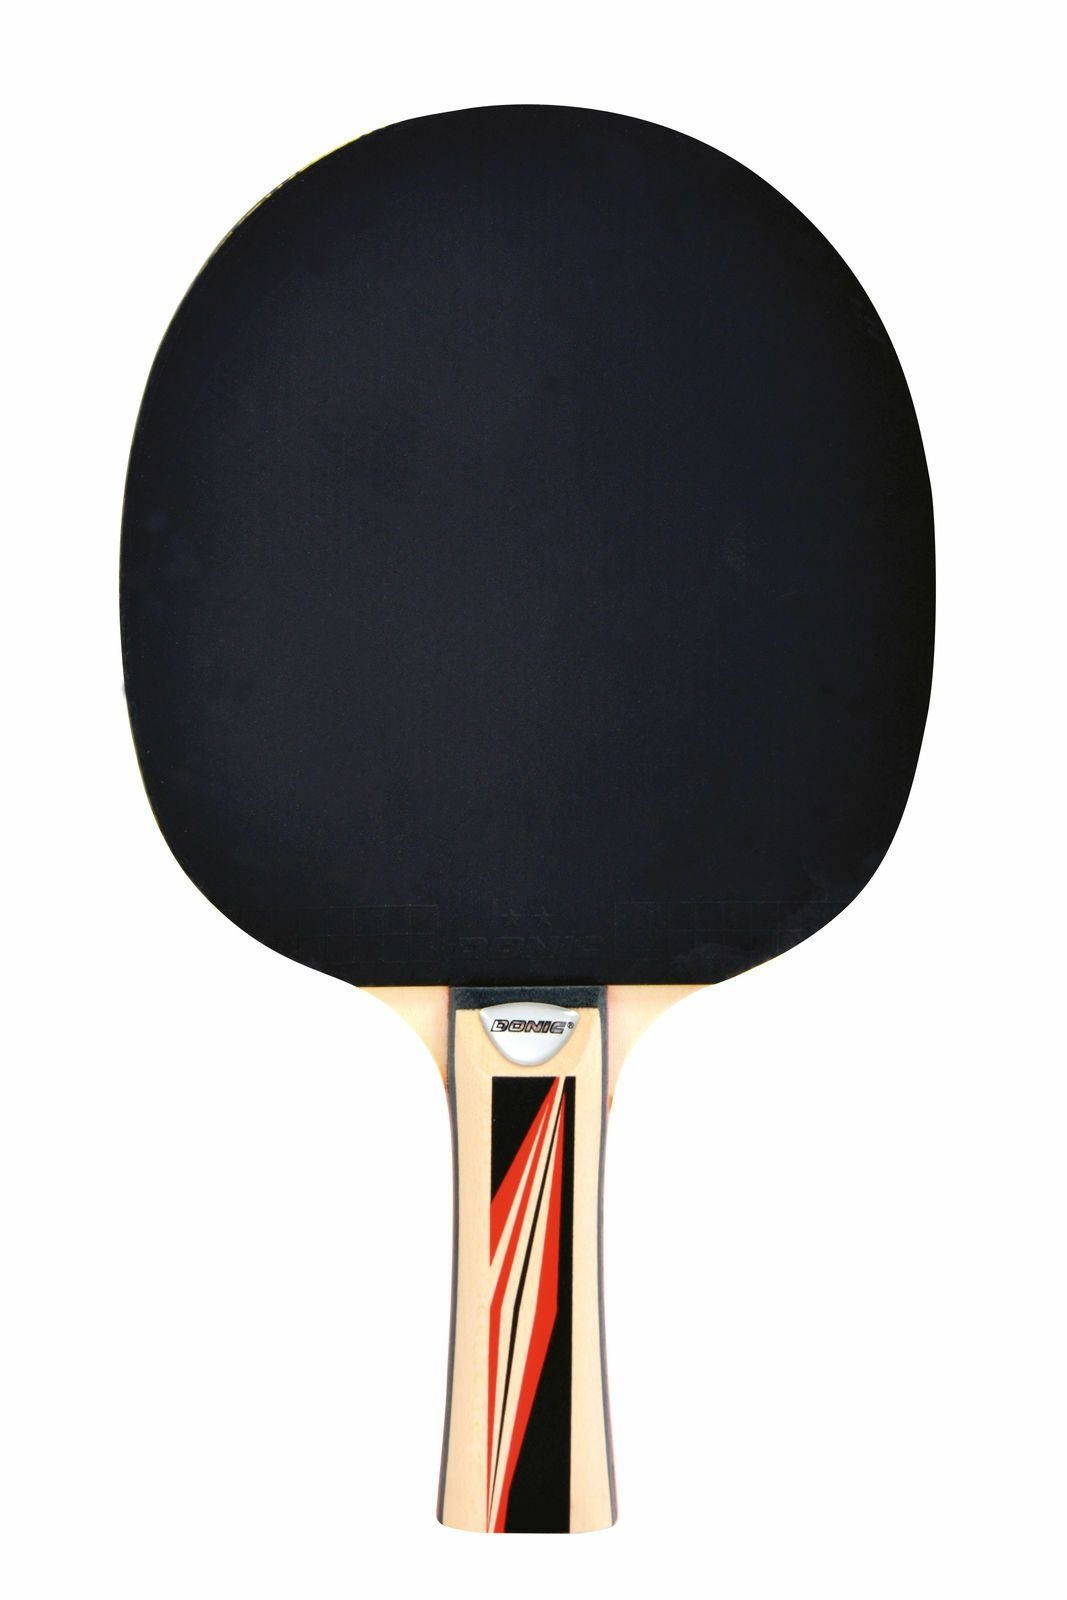 Tischtennis 600, Donic-Schildkröt Bat Table Team Racket Tennis Tischtennisschläger Schläger Top